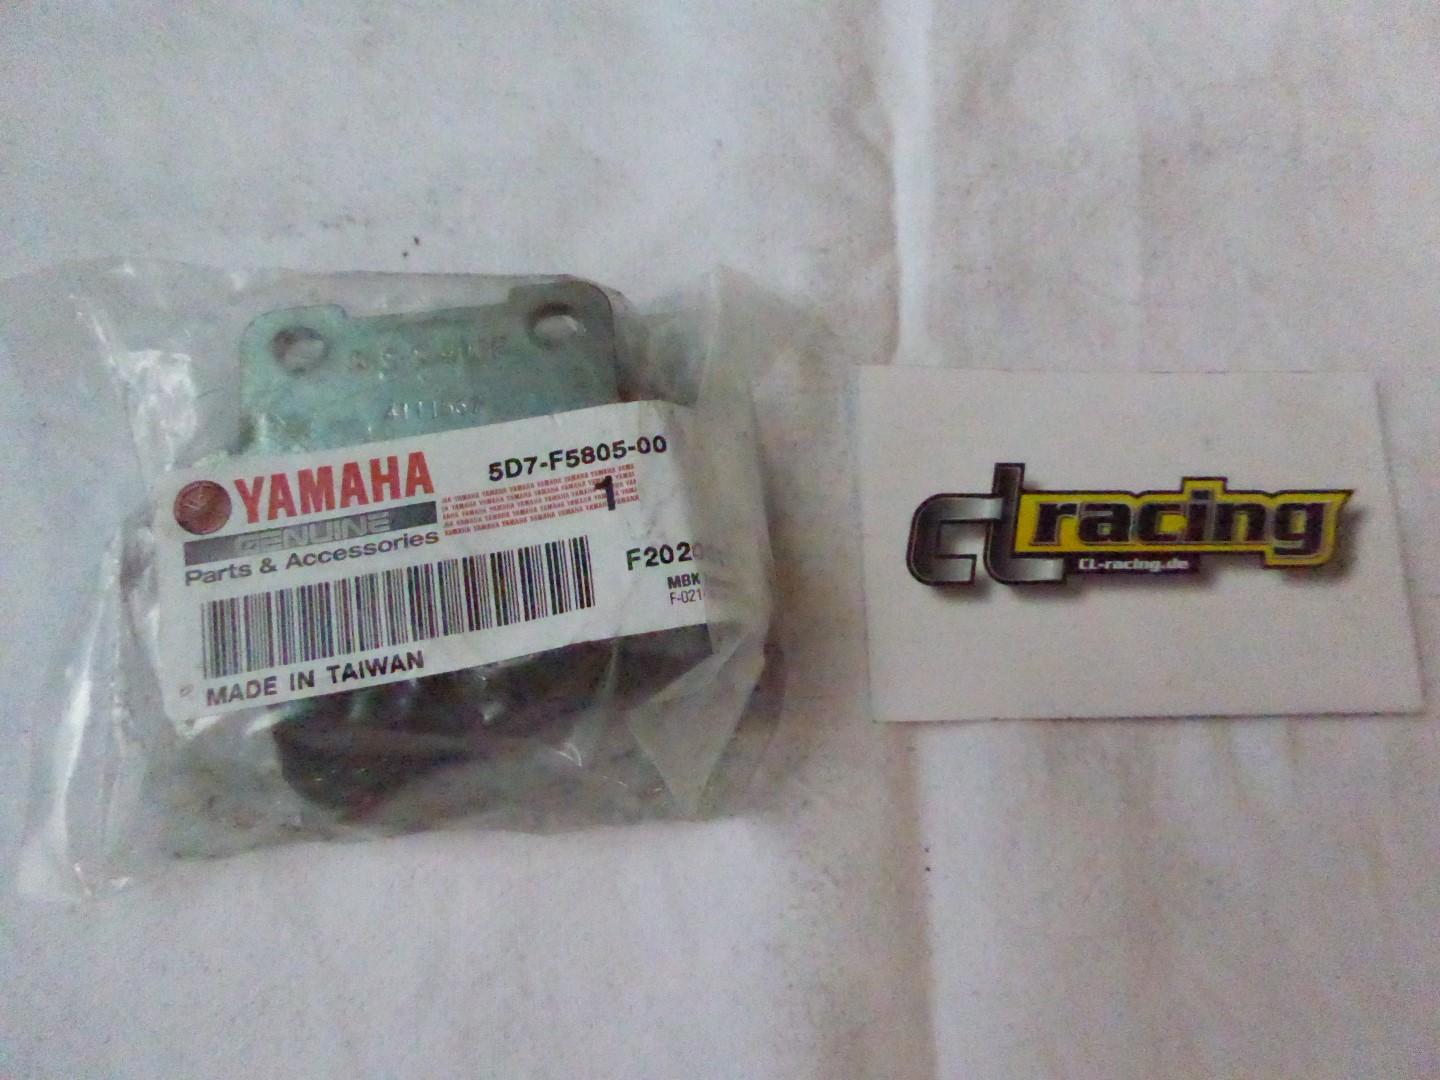 Bremsbeläge Bremsbelag vorne brakepads für Yamaha Yzf-R 125 Mt 125 5D7-F5805